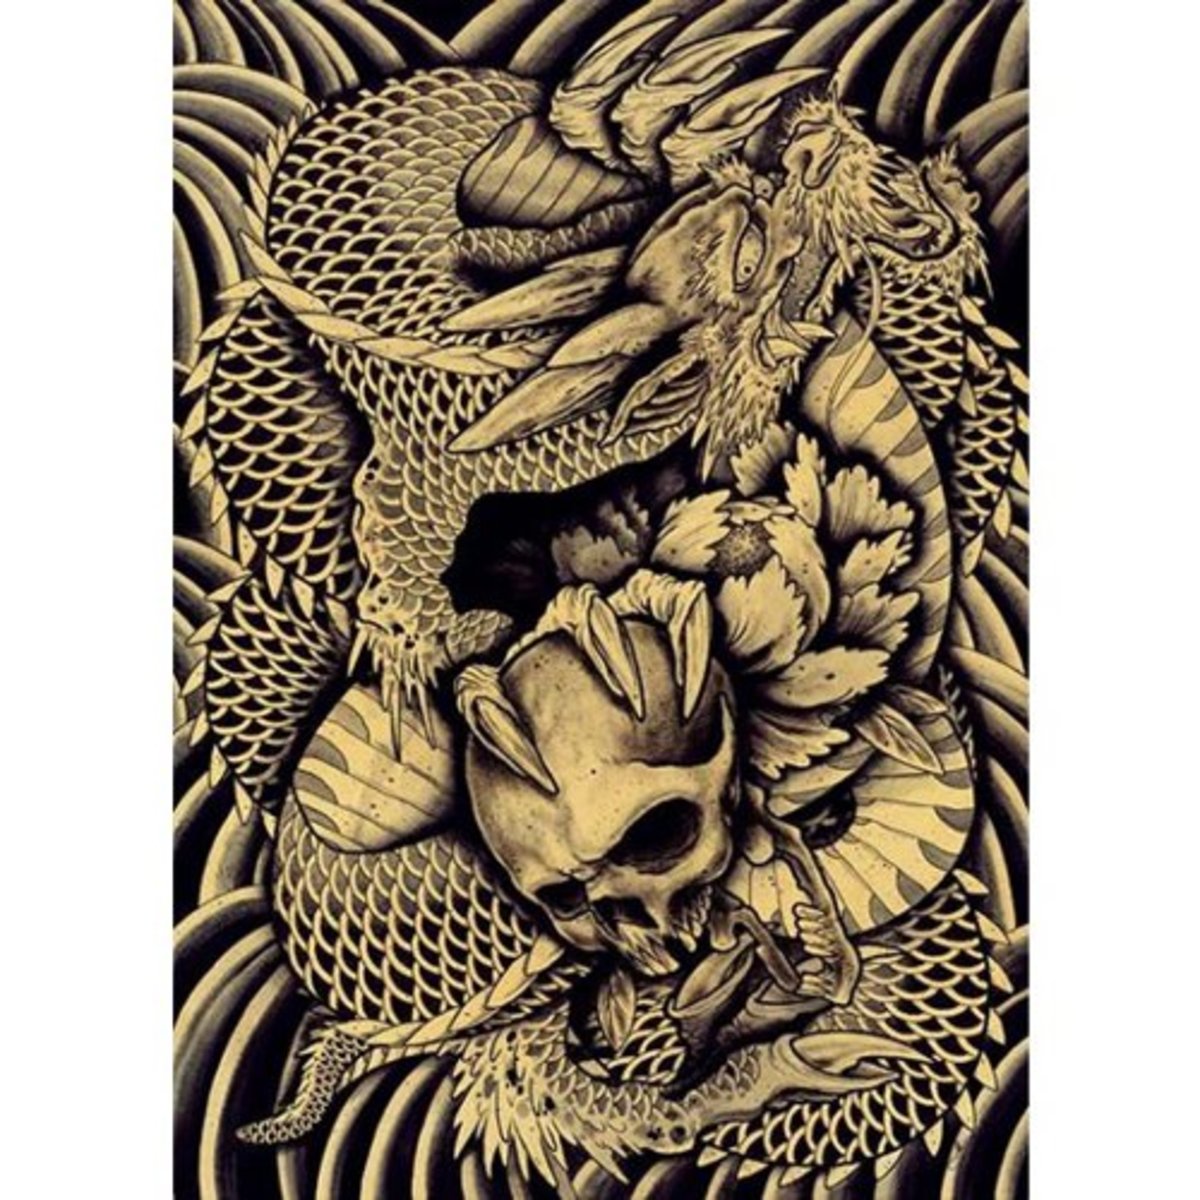 Dragon-Skull-Art-by-Clark-North